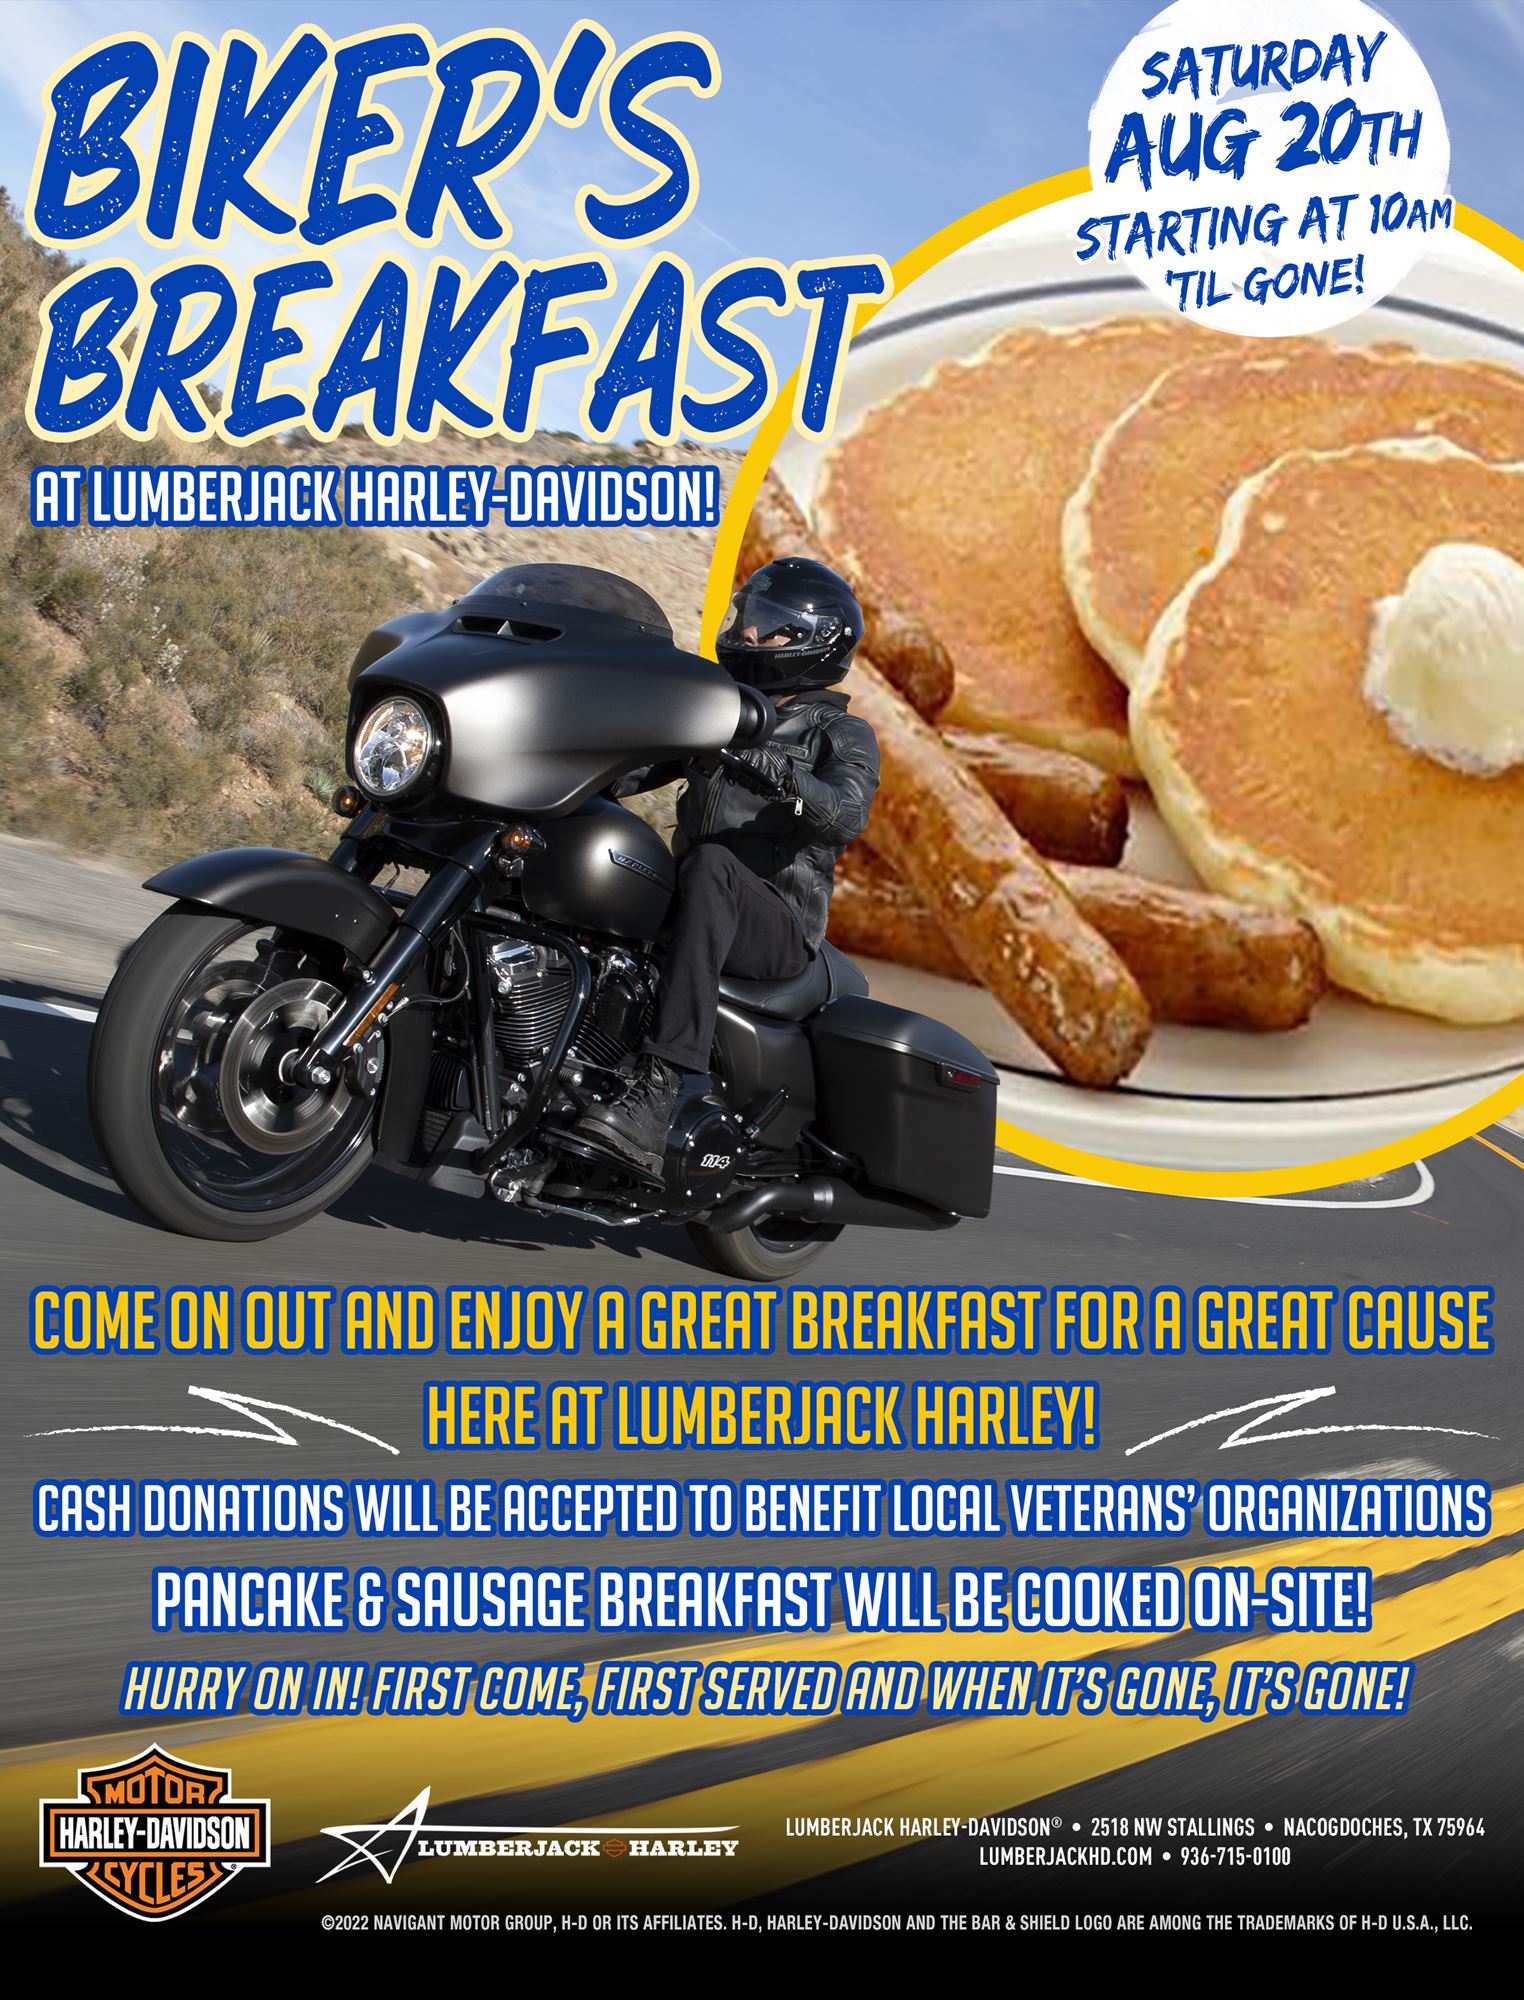 Biker's Breakfast at Lumberjack Harley